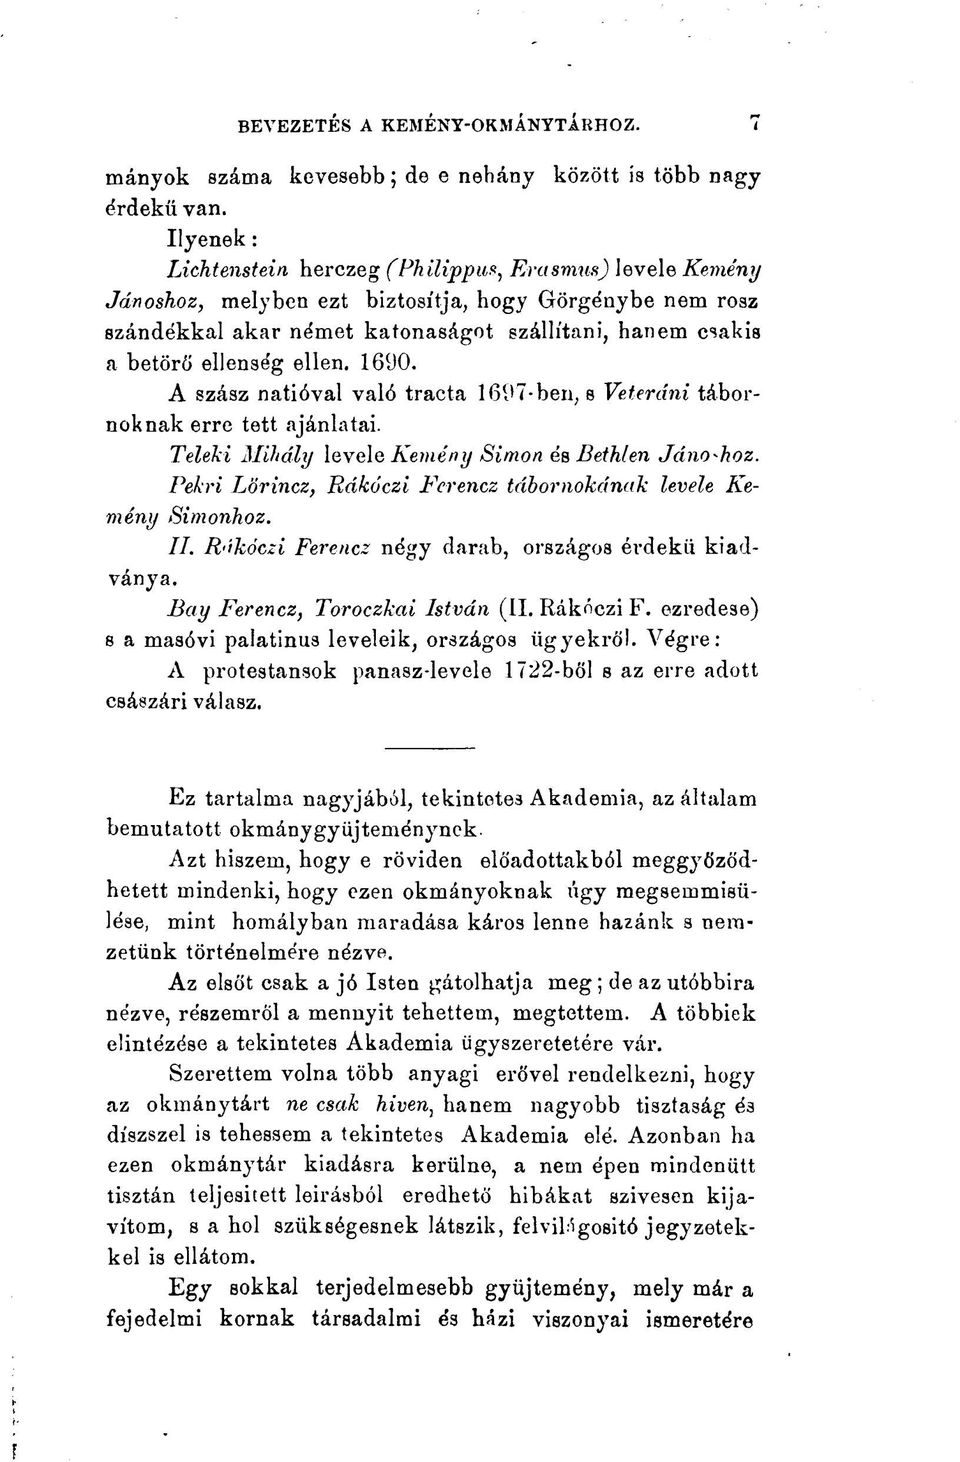 ellen. 1690. A szász natióval való tracta 1697-ben. s Veteráni tábornoknak erre tett ajánlatai. Teleki Mihály levele Kemény Simon és Bethlen Jánoshoz.